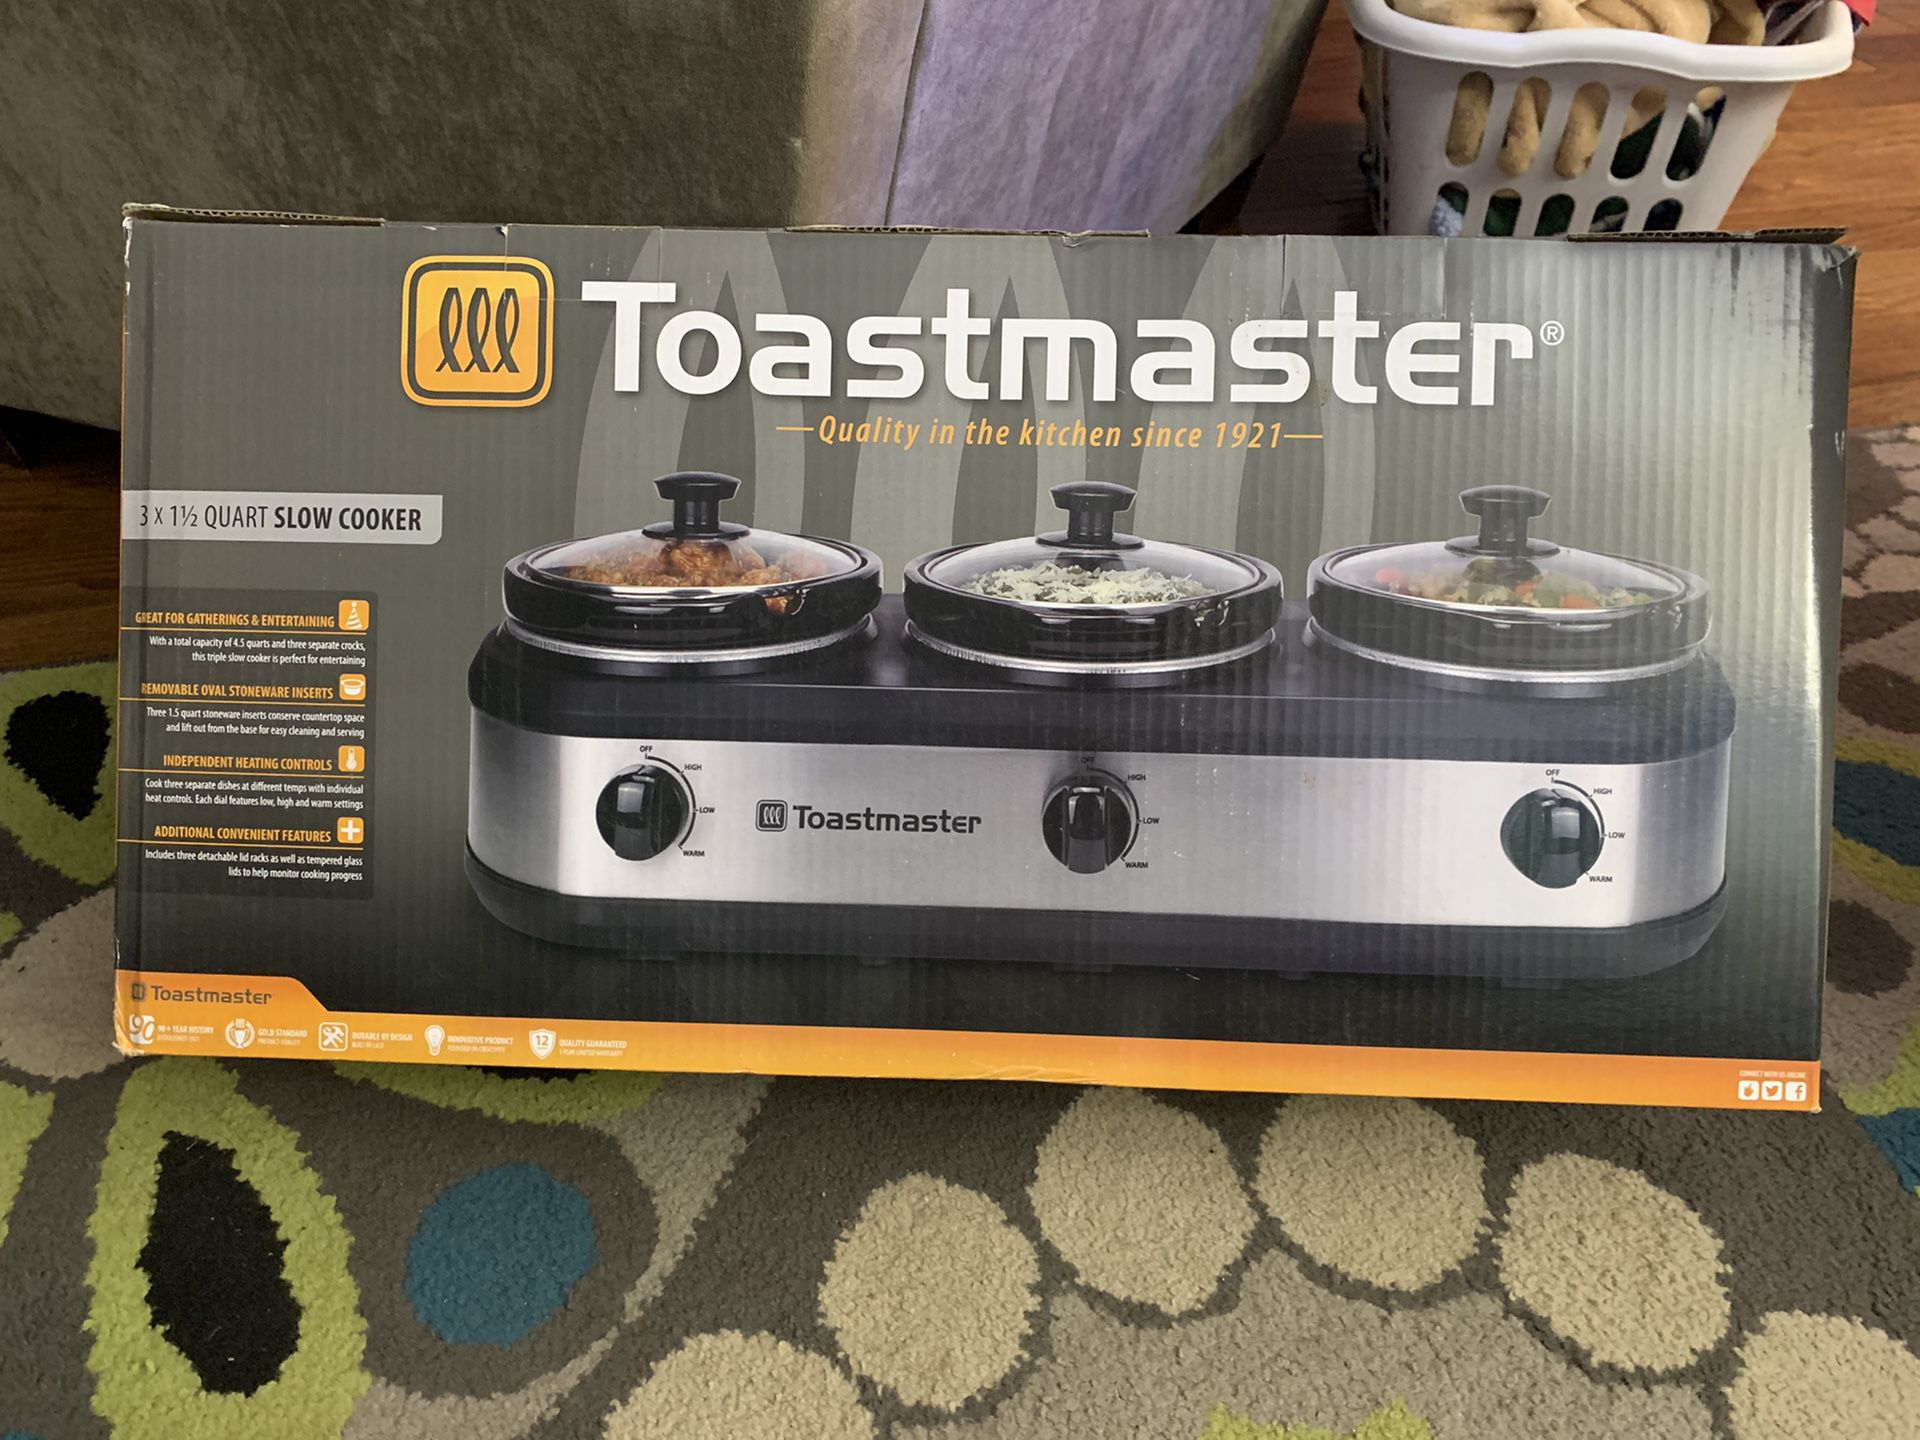 Toastmaster triple crock pot - 1.5 qt each, 4.5 qt total